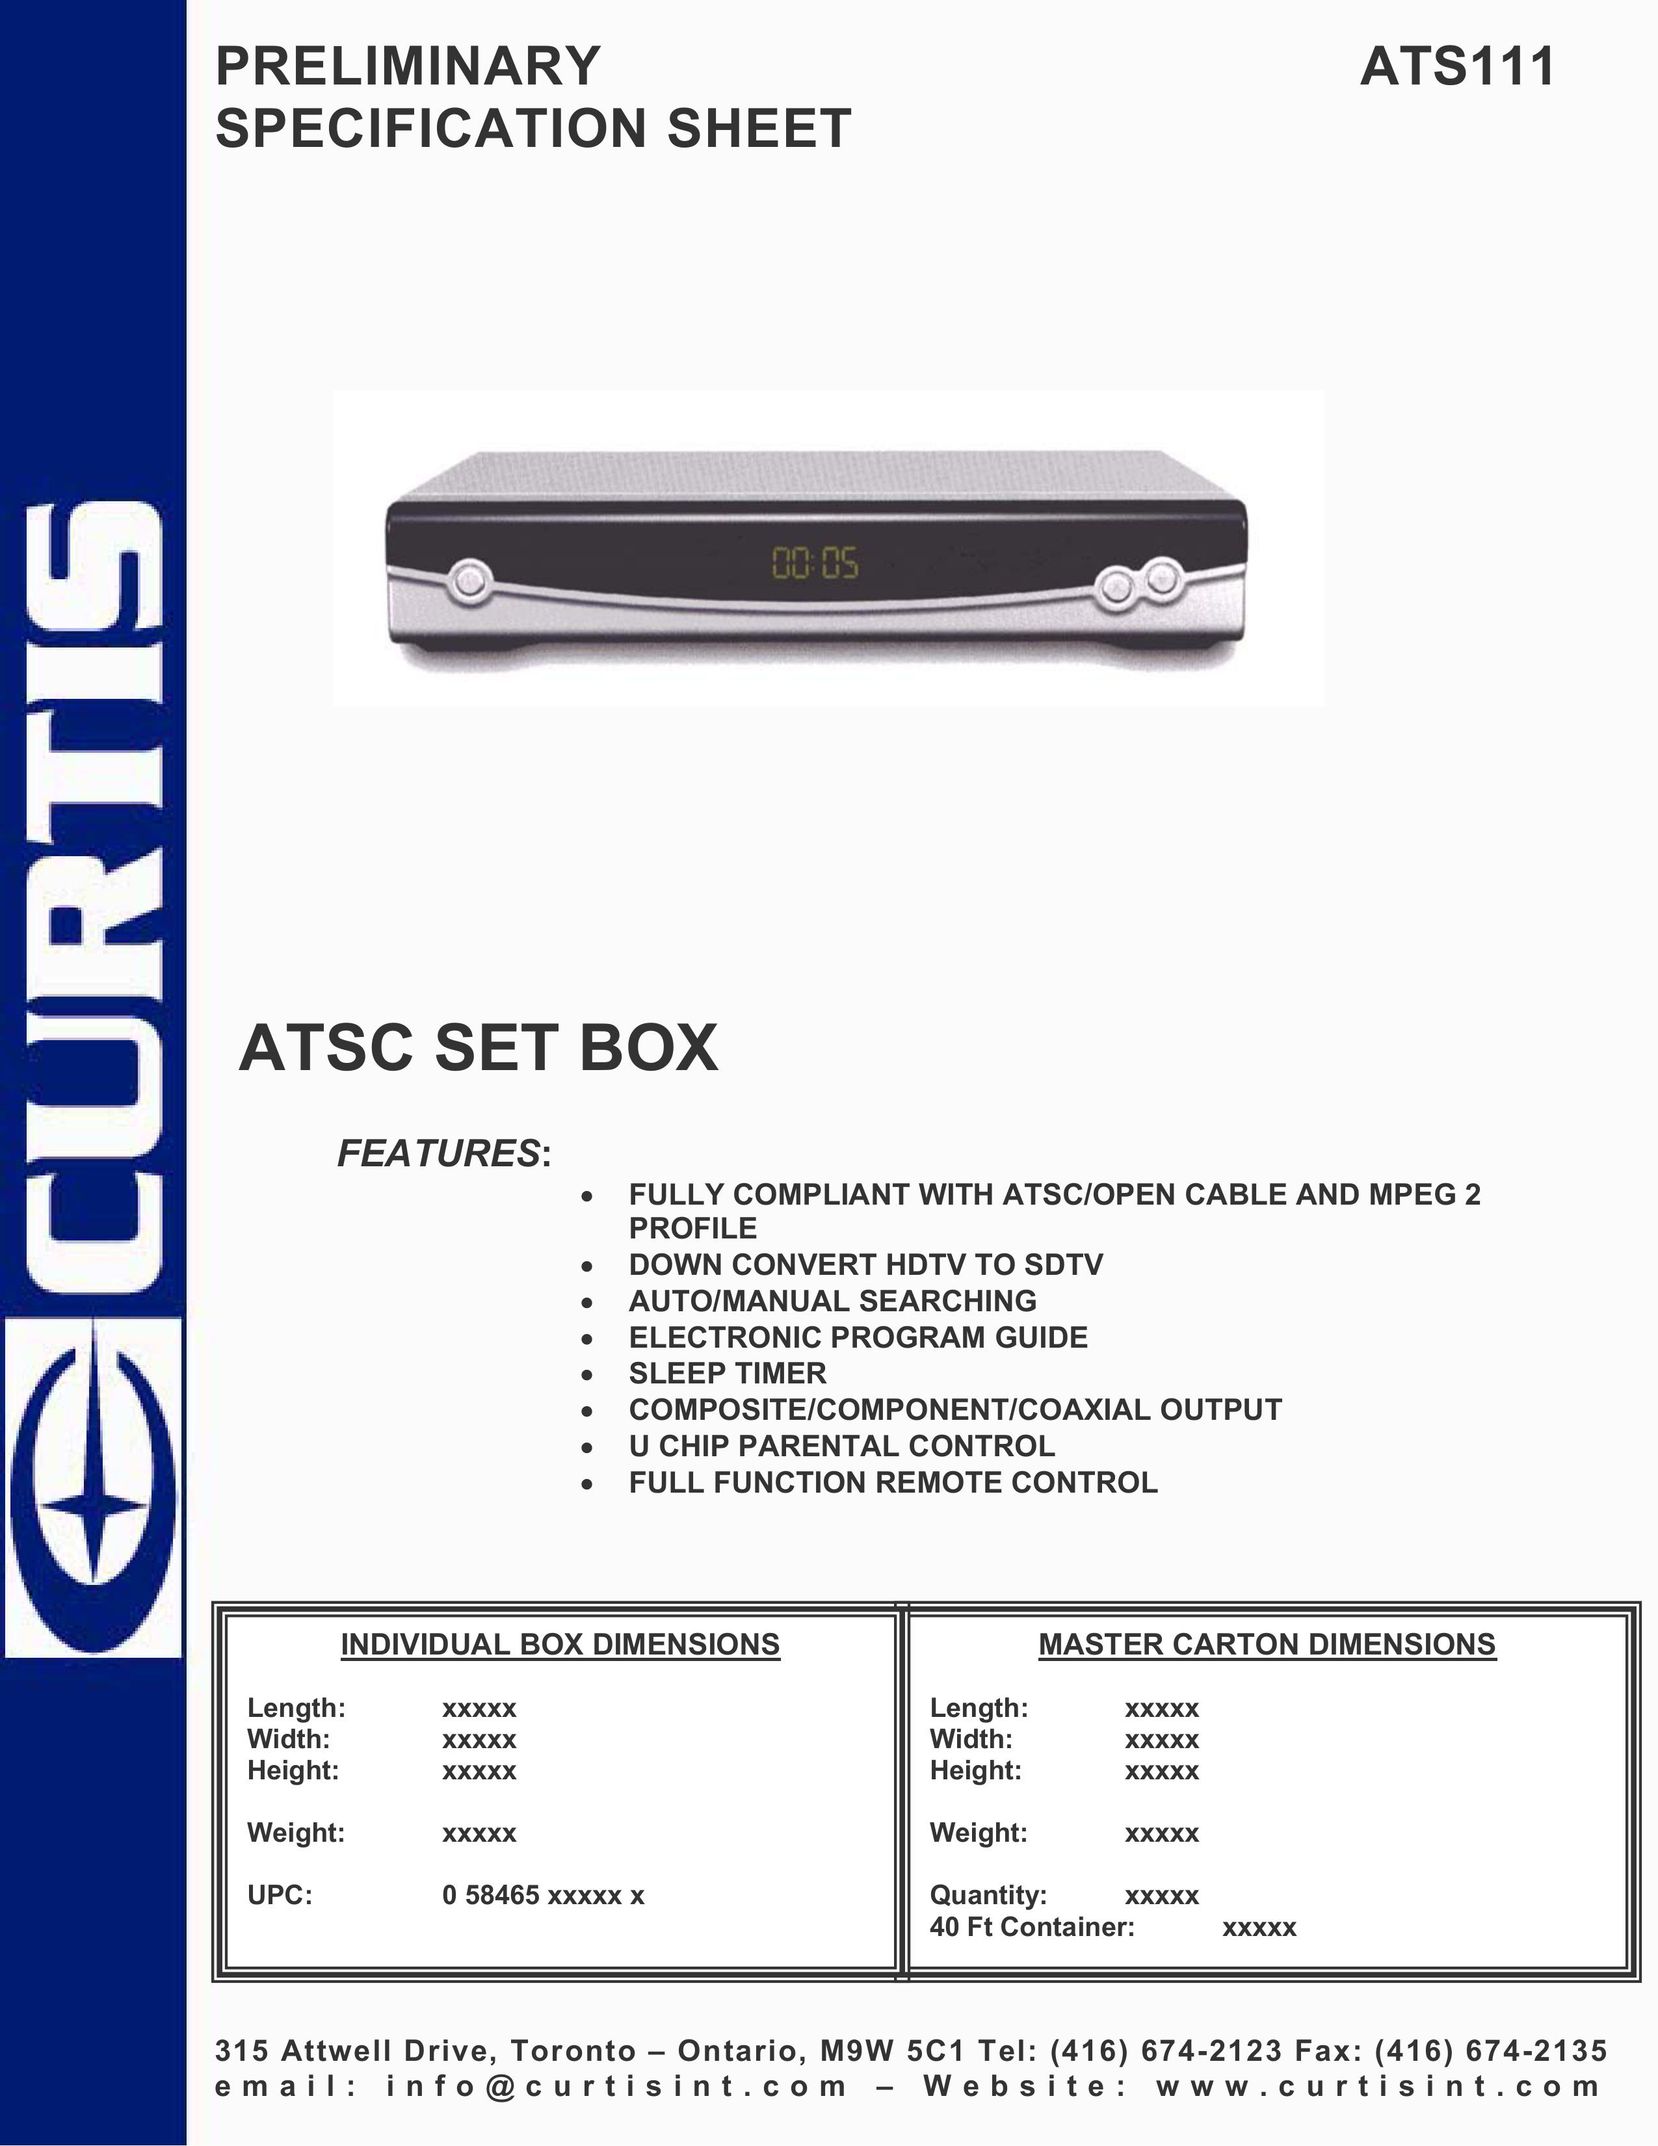 Curtis ATS111 Satellite TV System User Manual